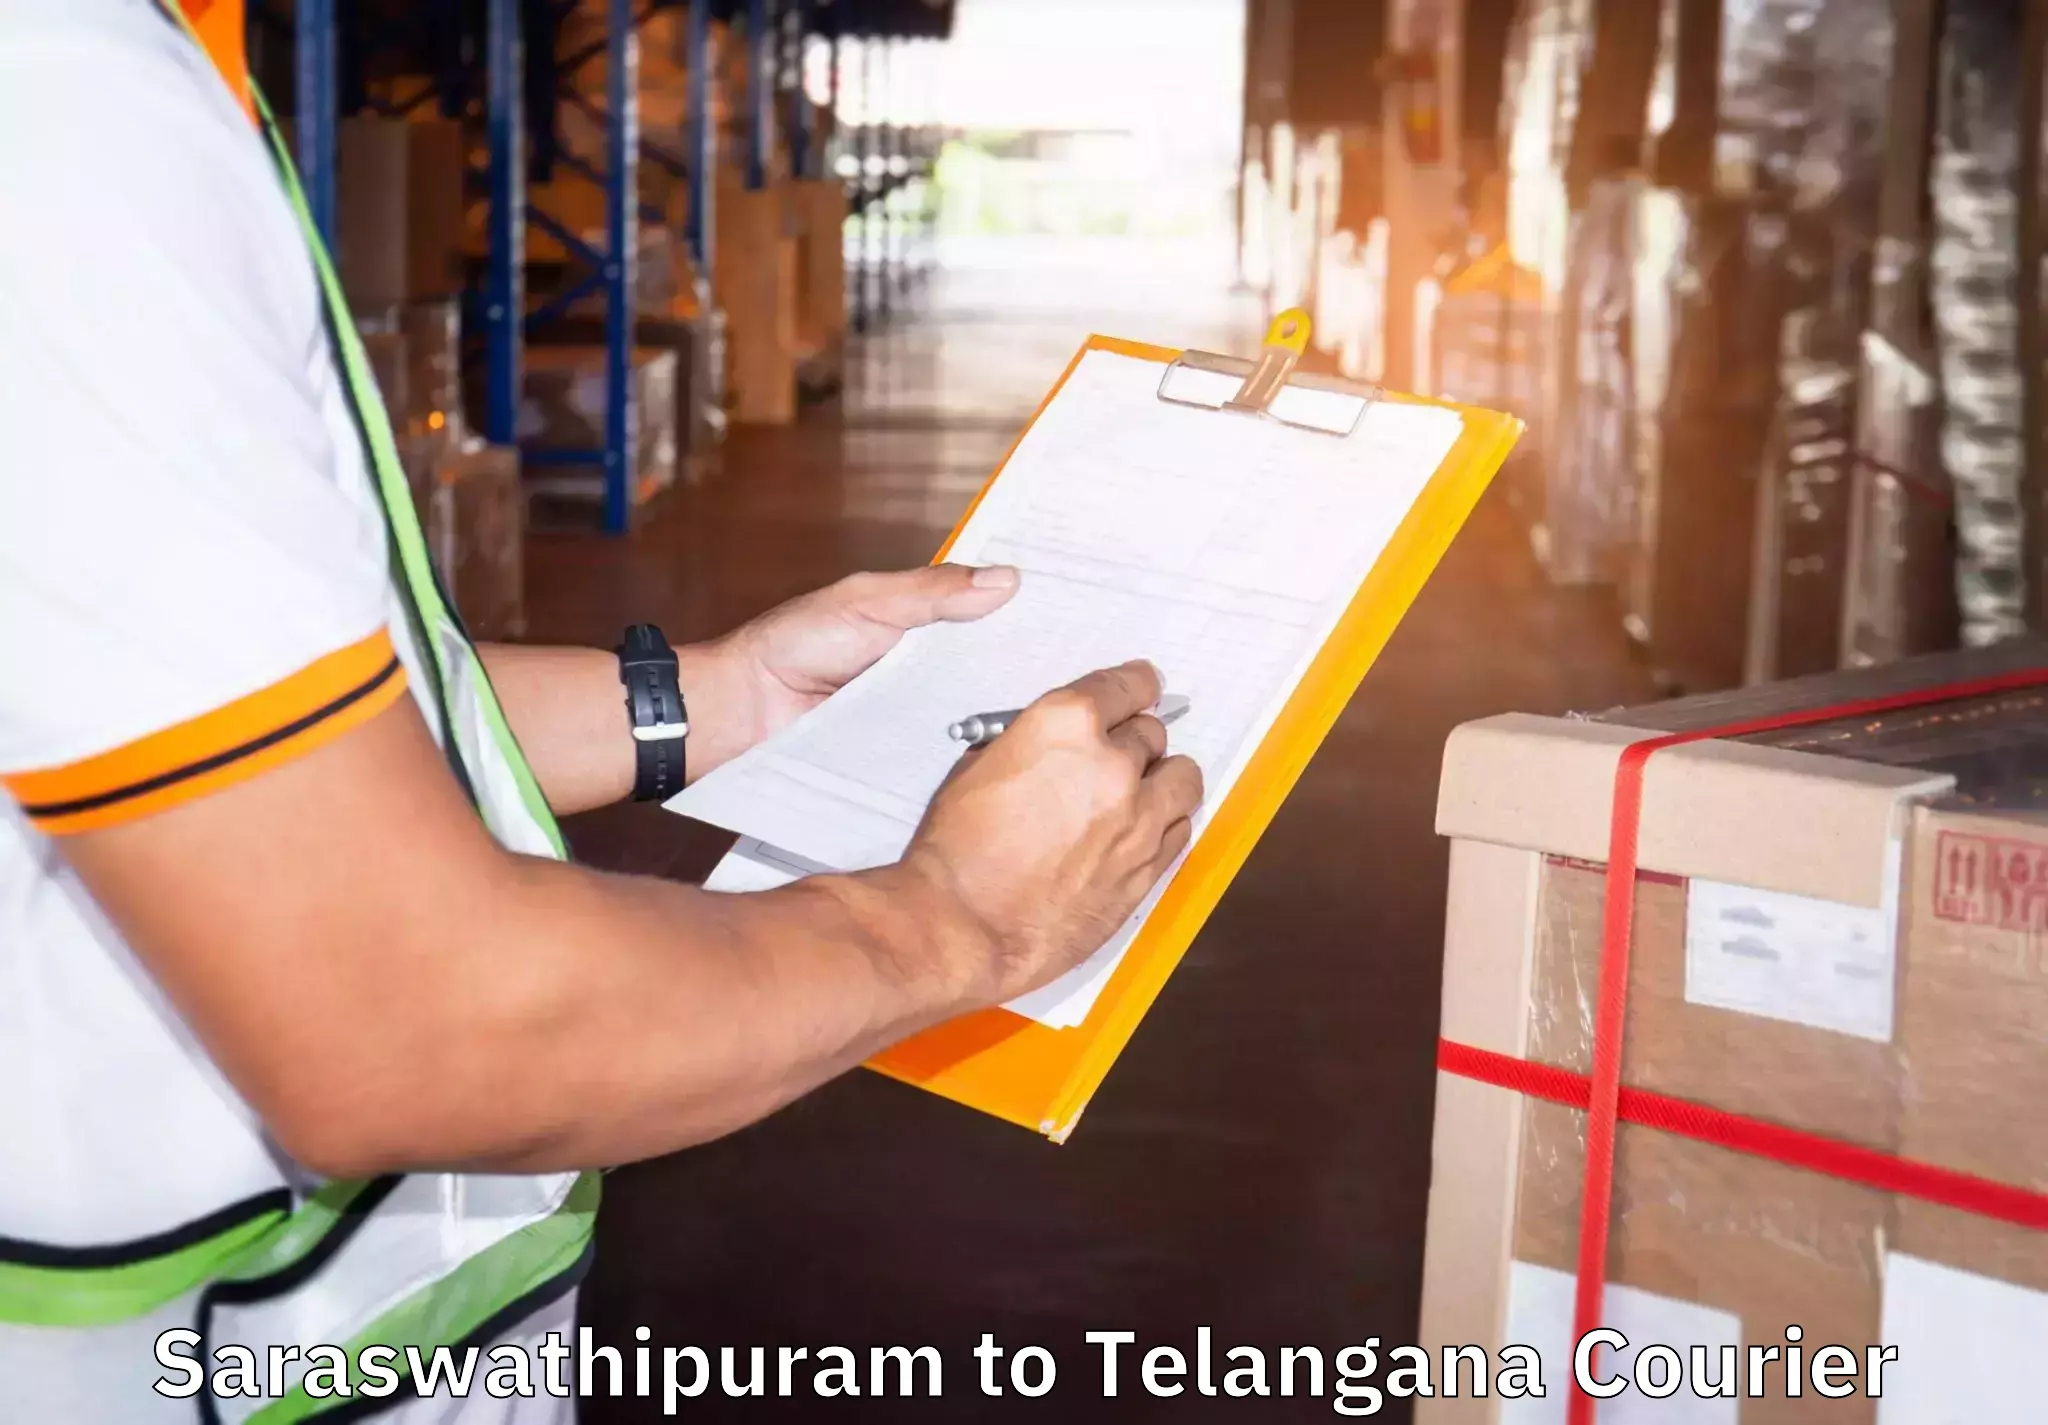 Household transport experts Saraswathipuram to Bejjanki